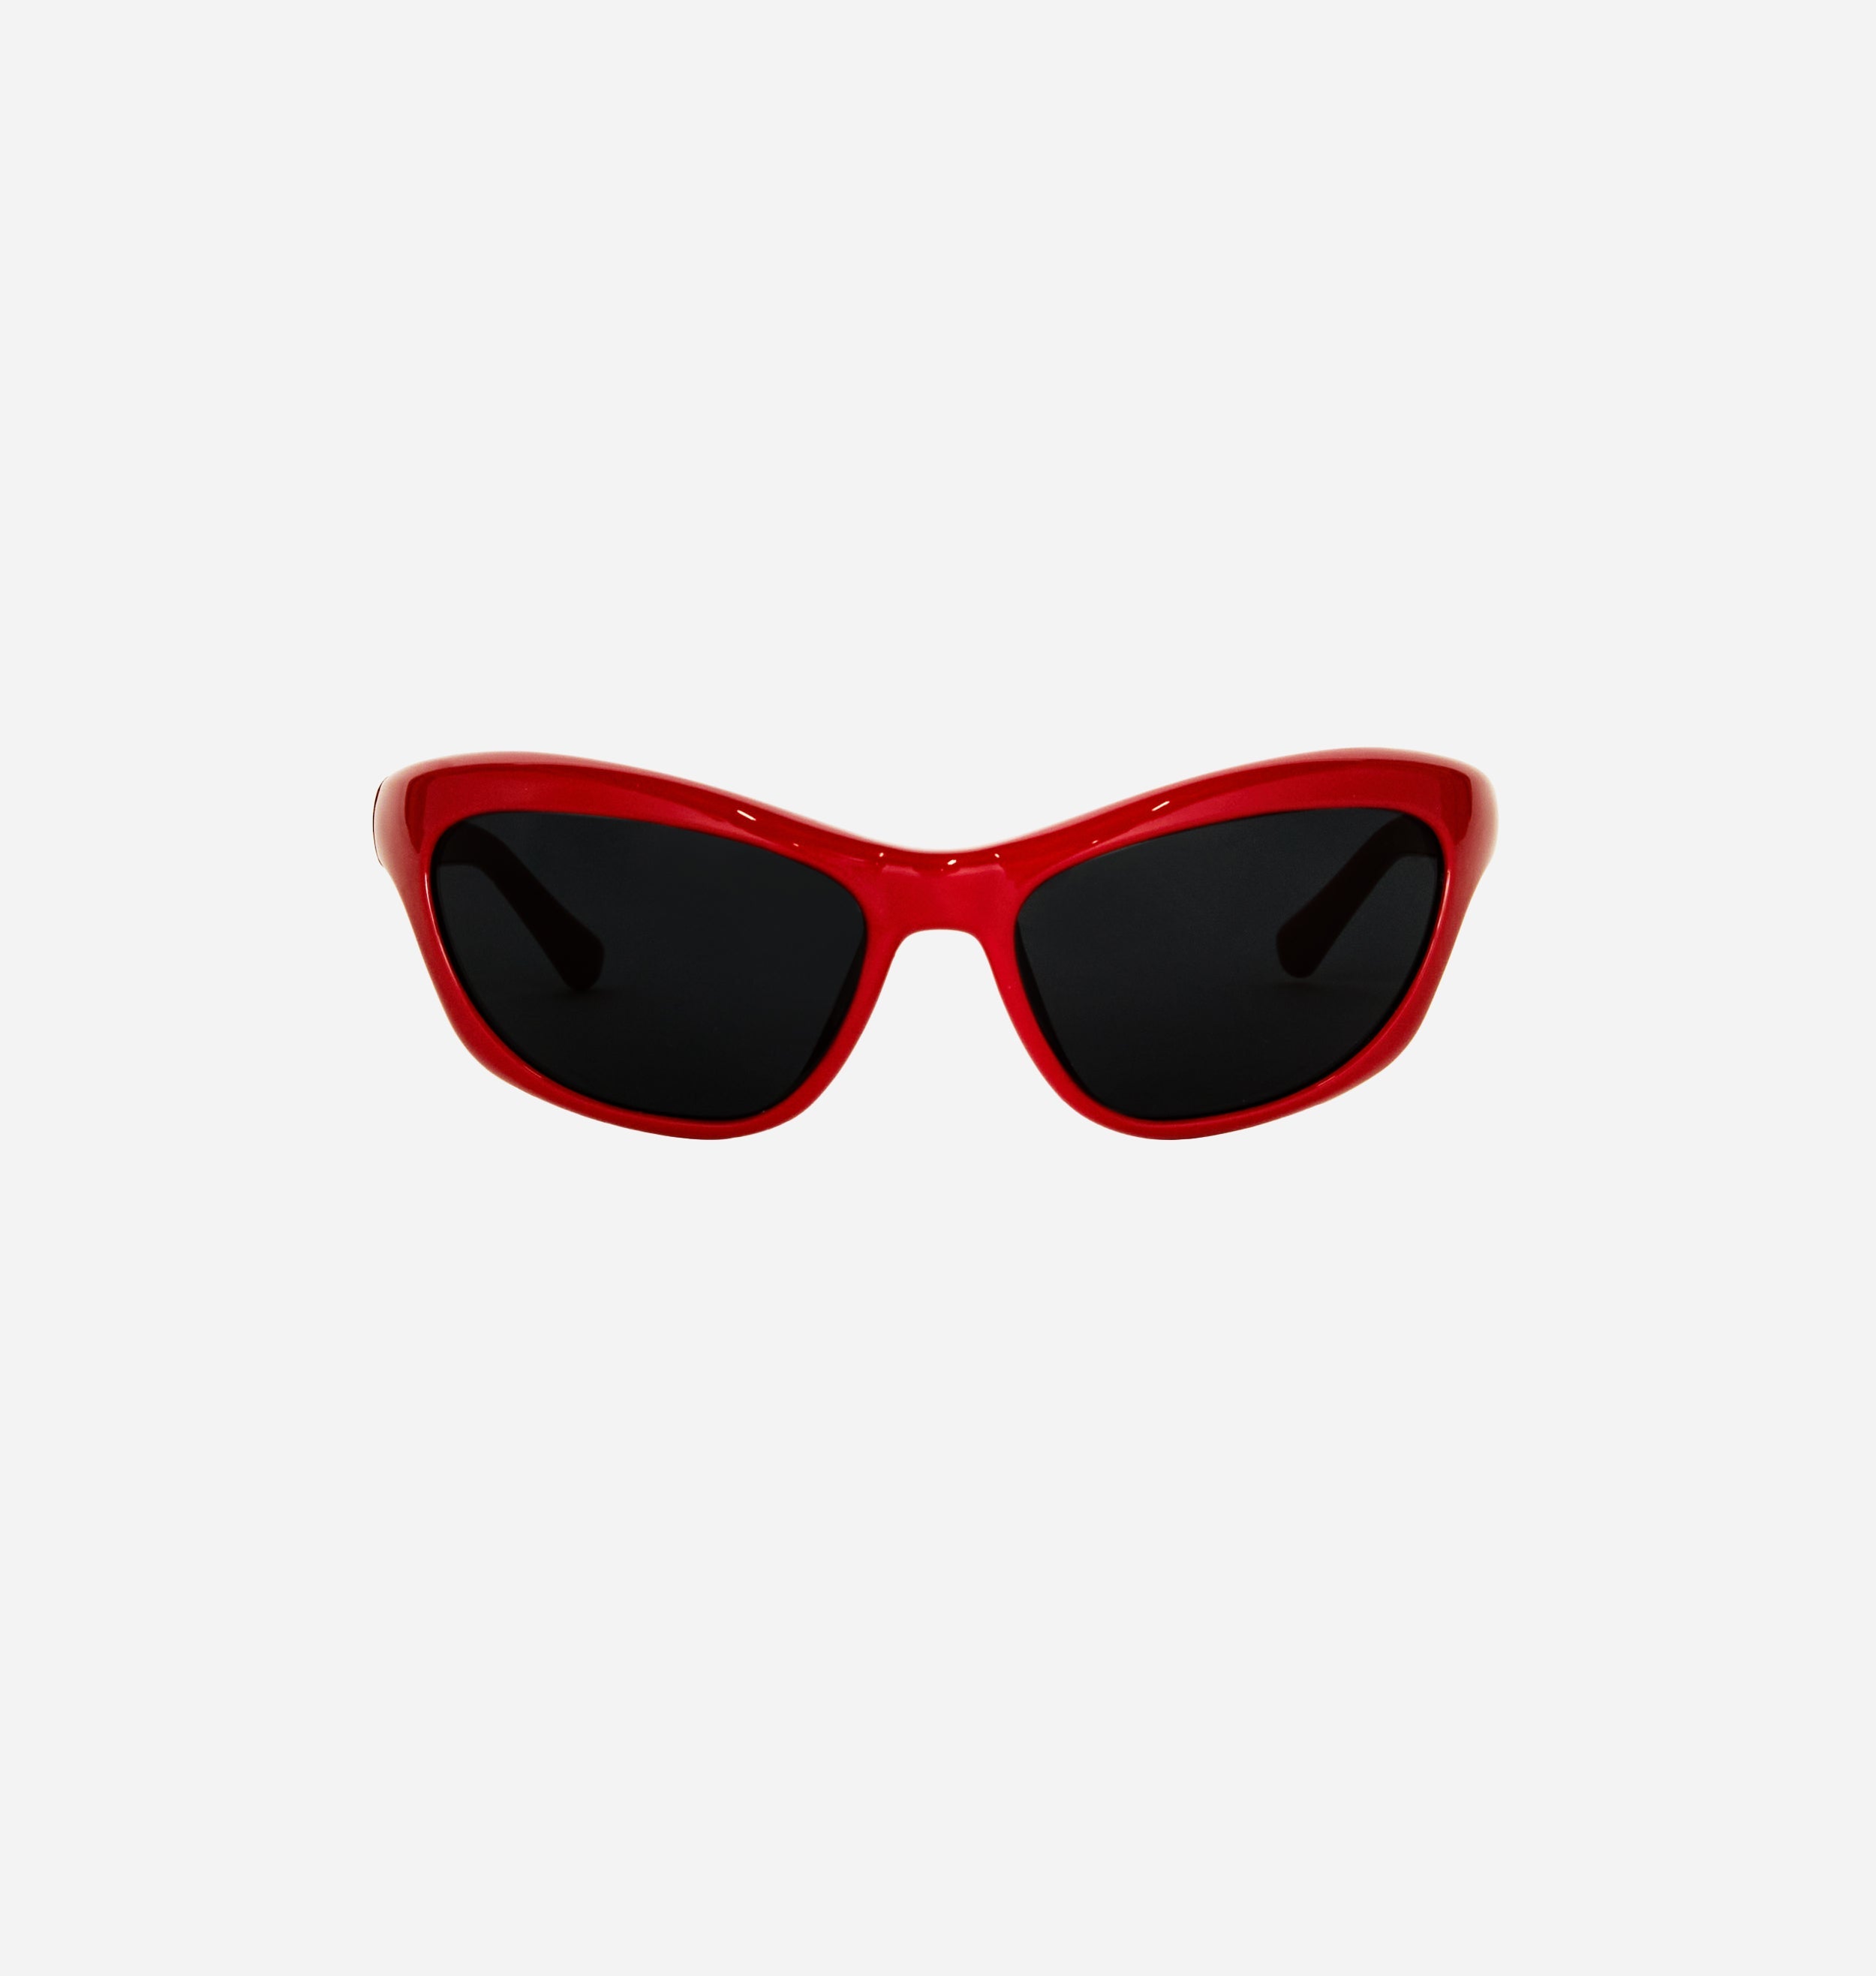 Sunglasses – Chiara Ferragni Brand